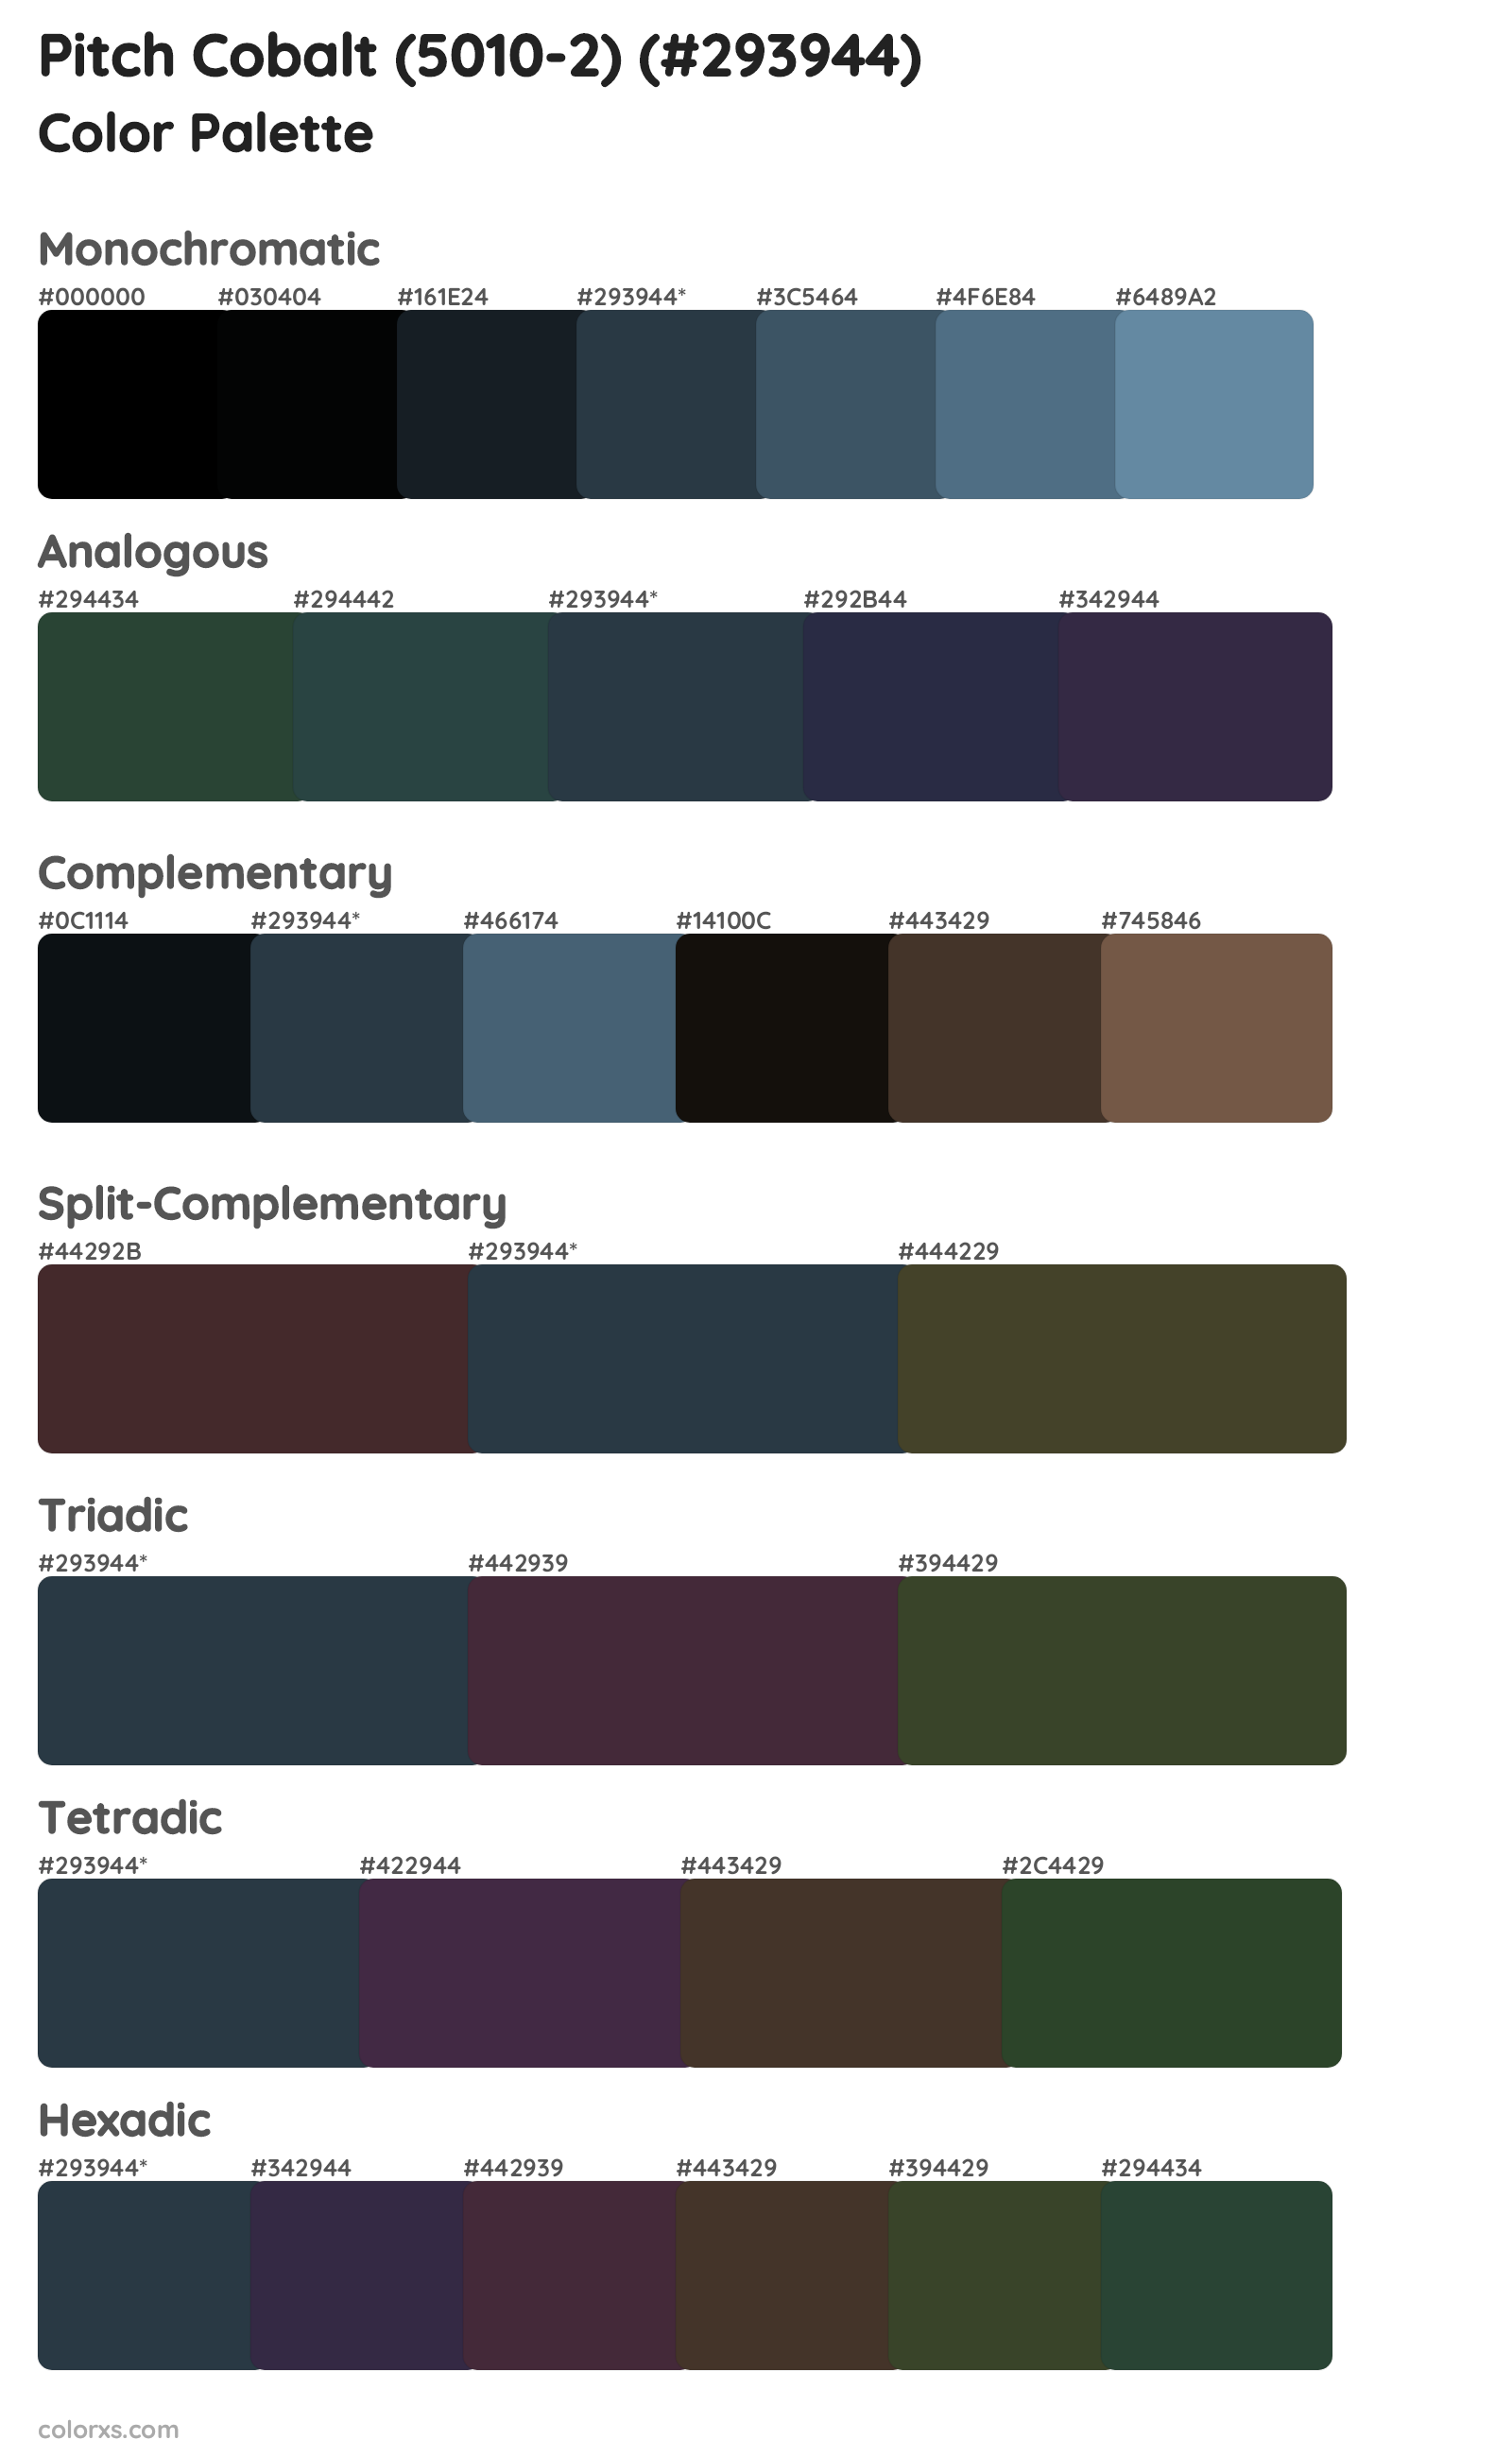 Pitch Cobalt (5010-2) Color Scheme Palettes